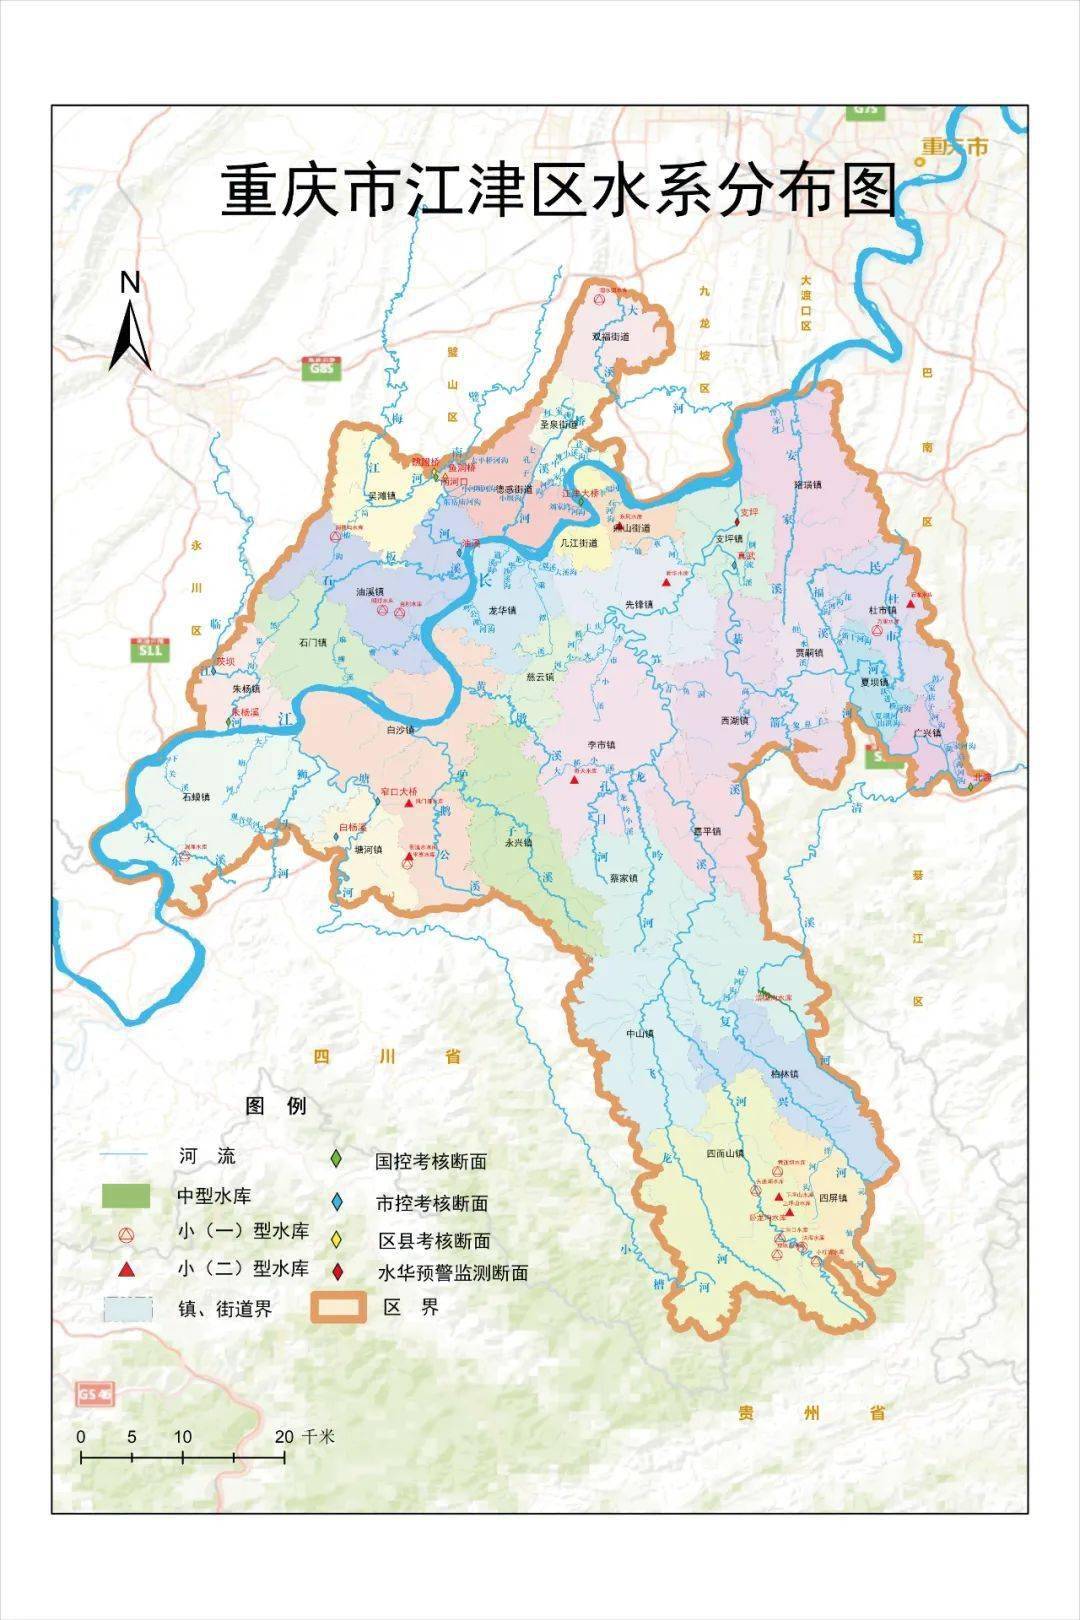 江津石门镇地图图片